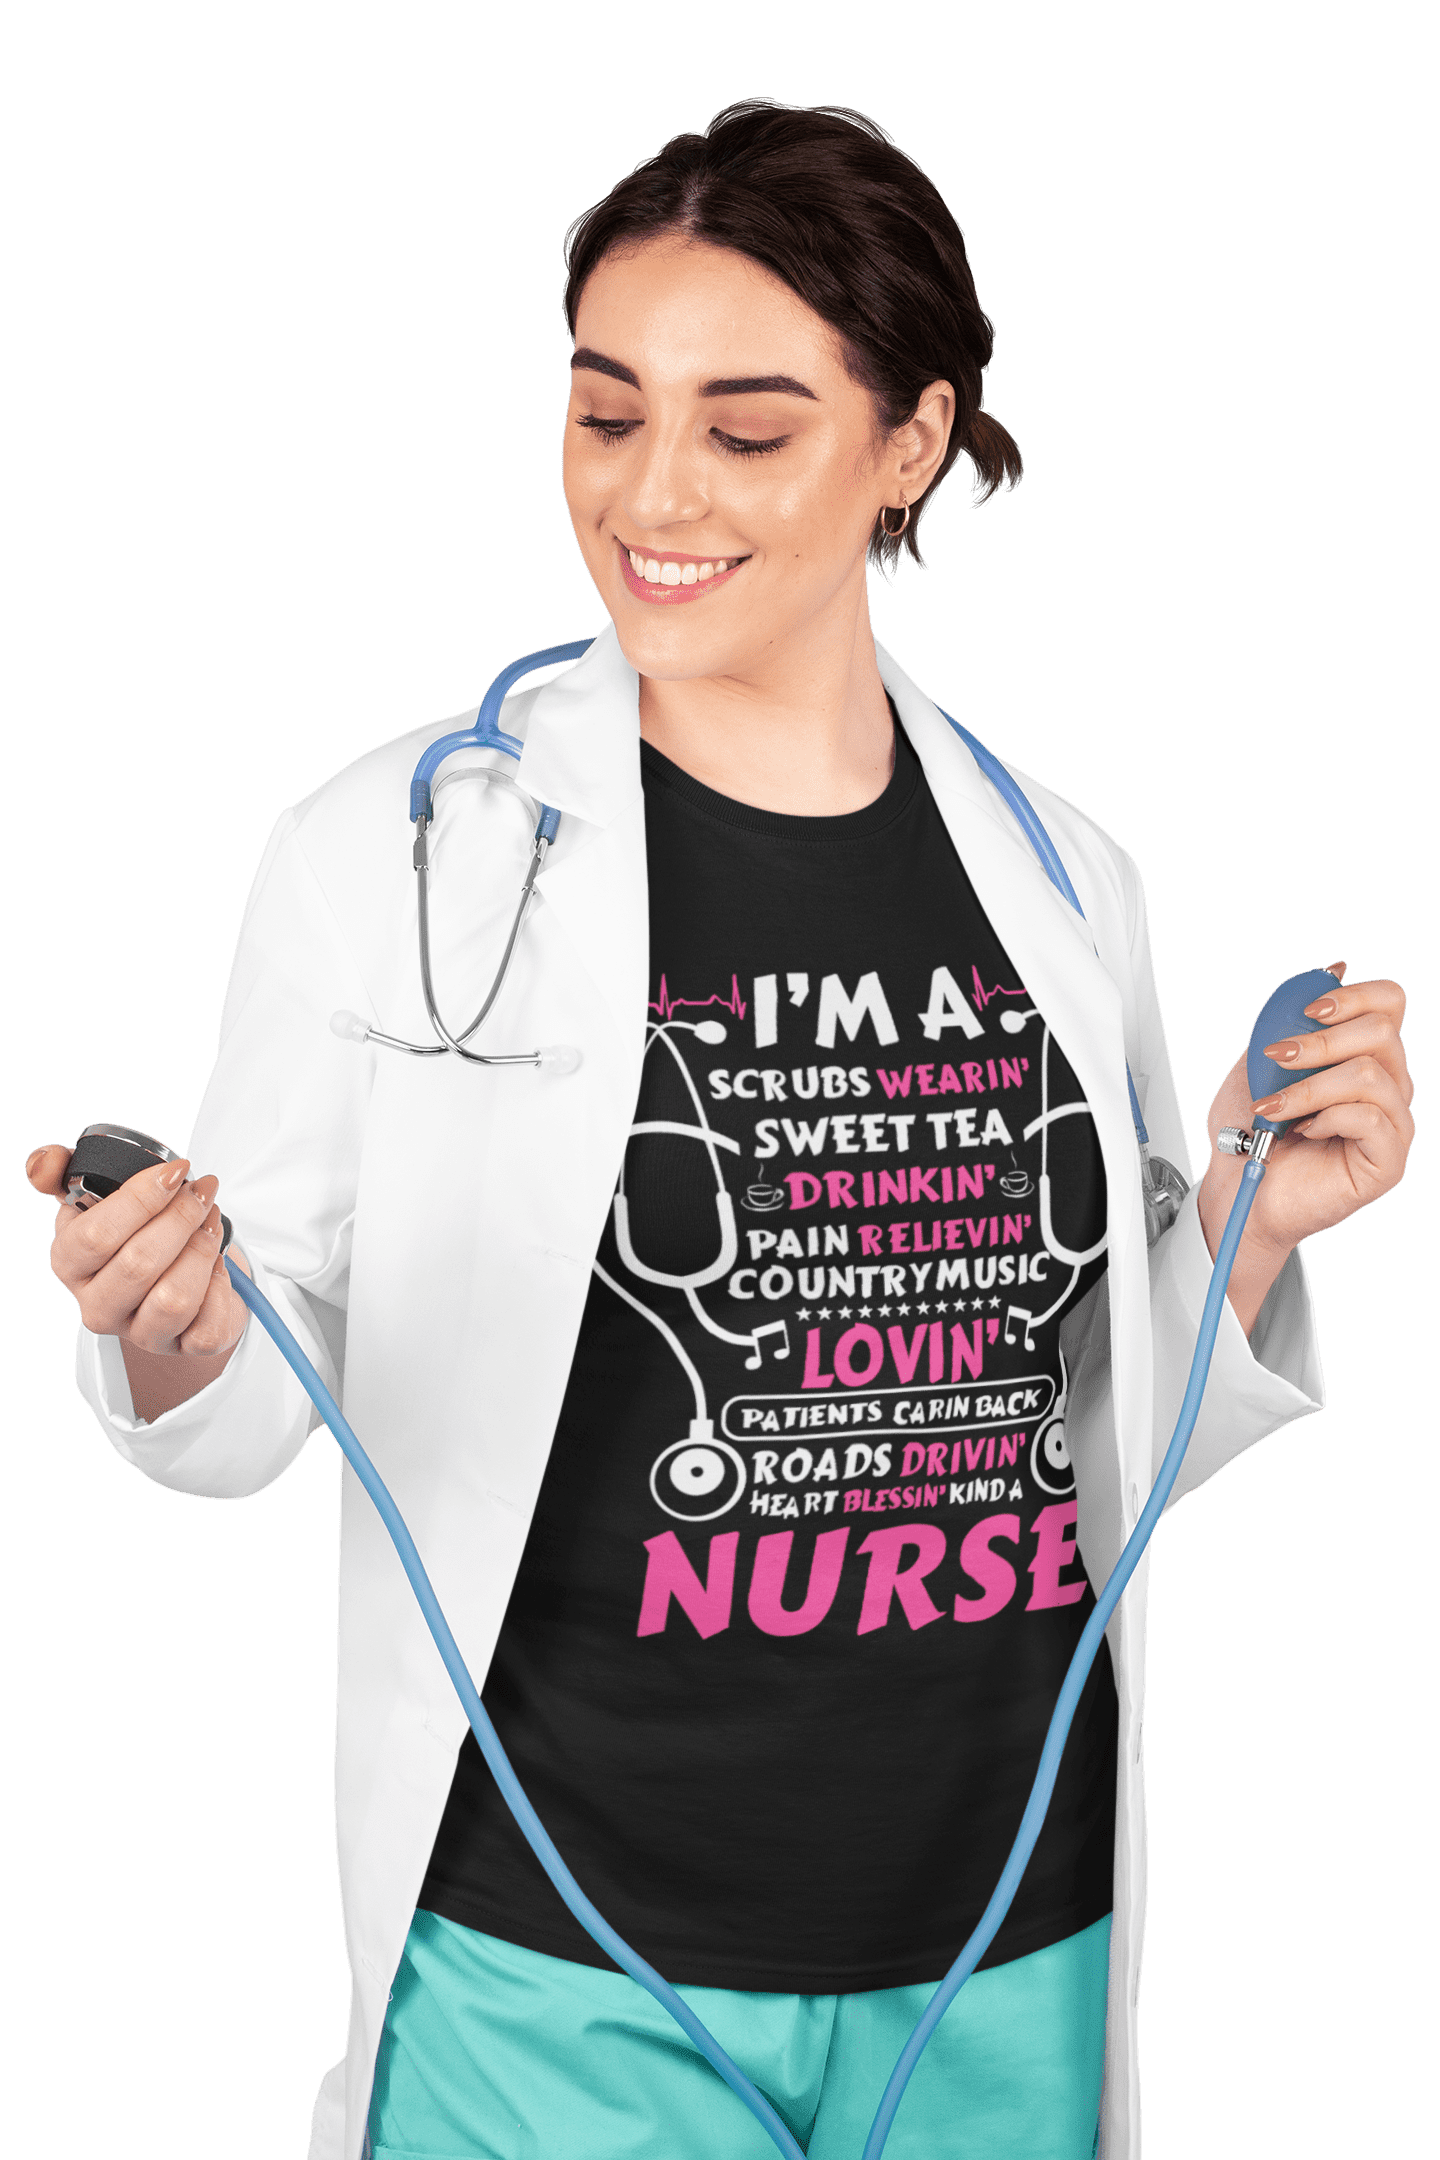 kaos how to describe about nurse